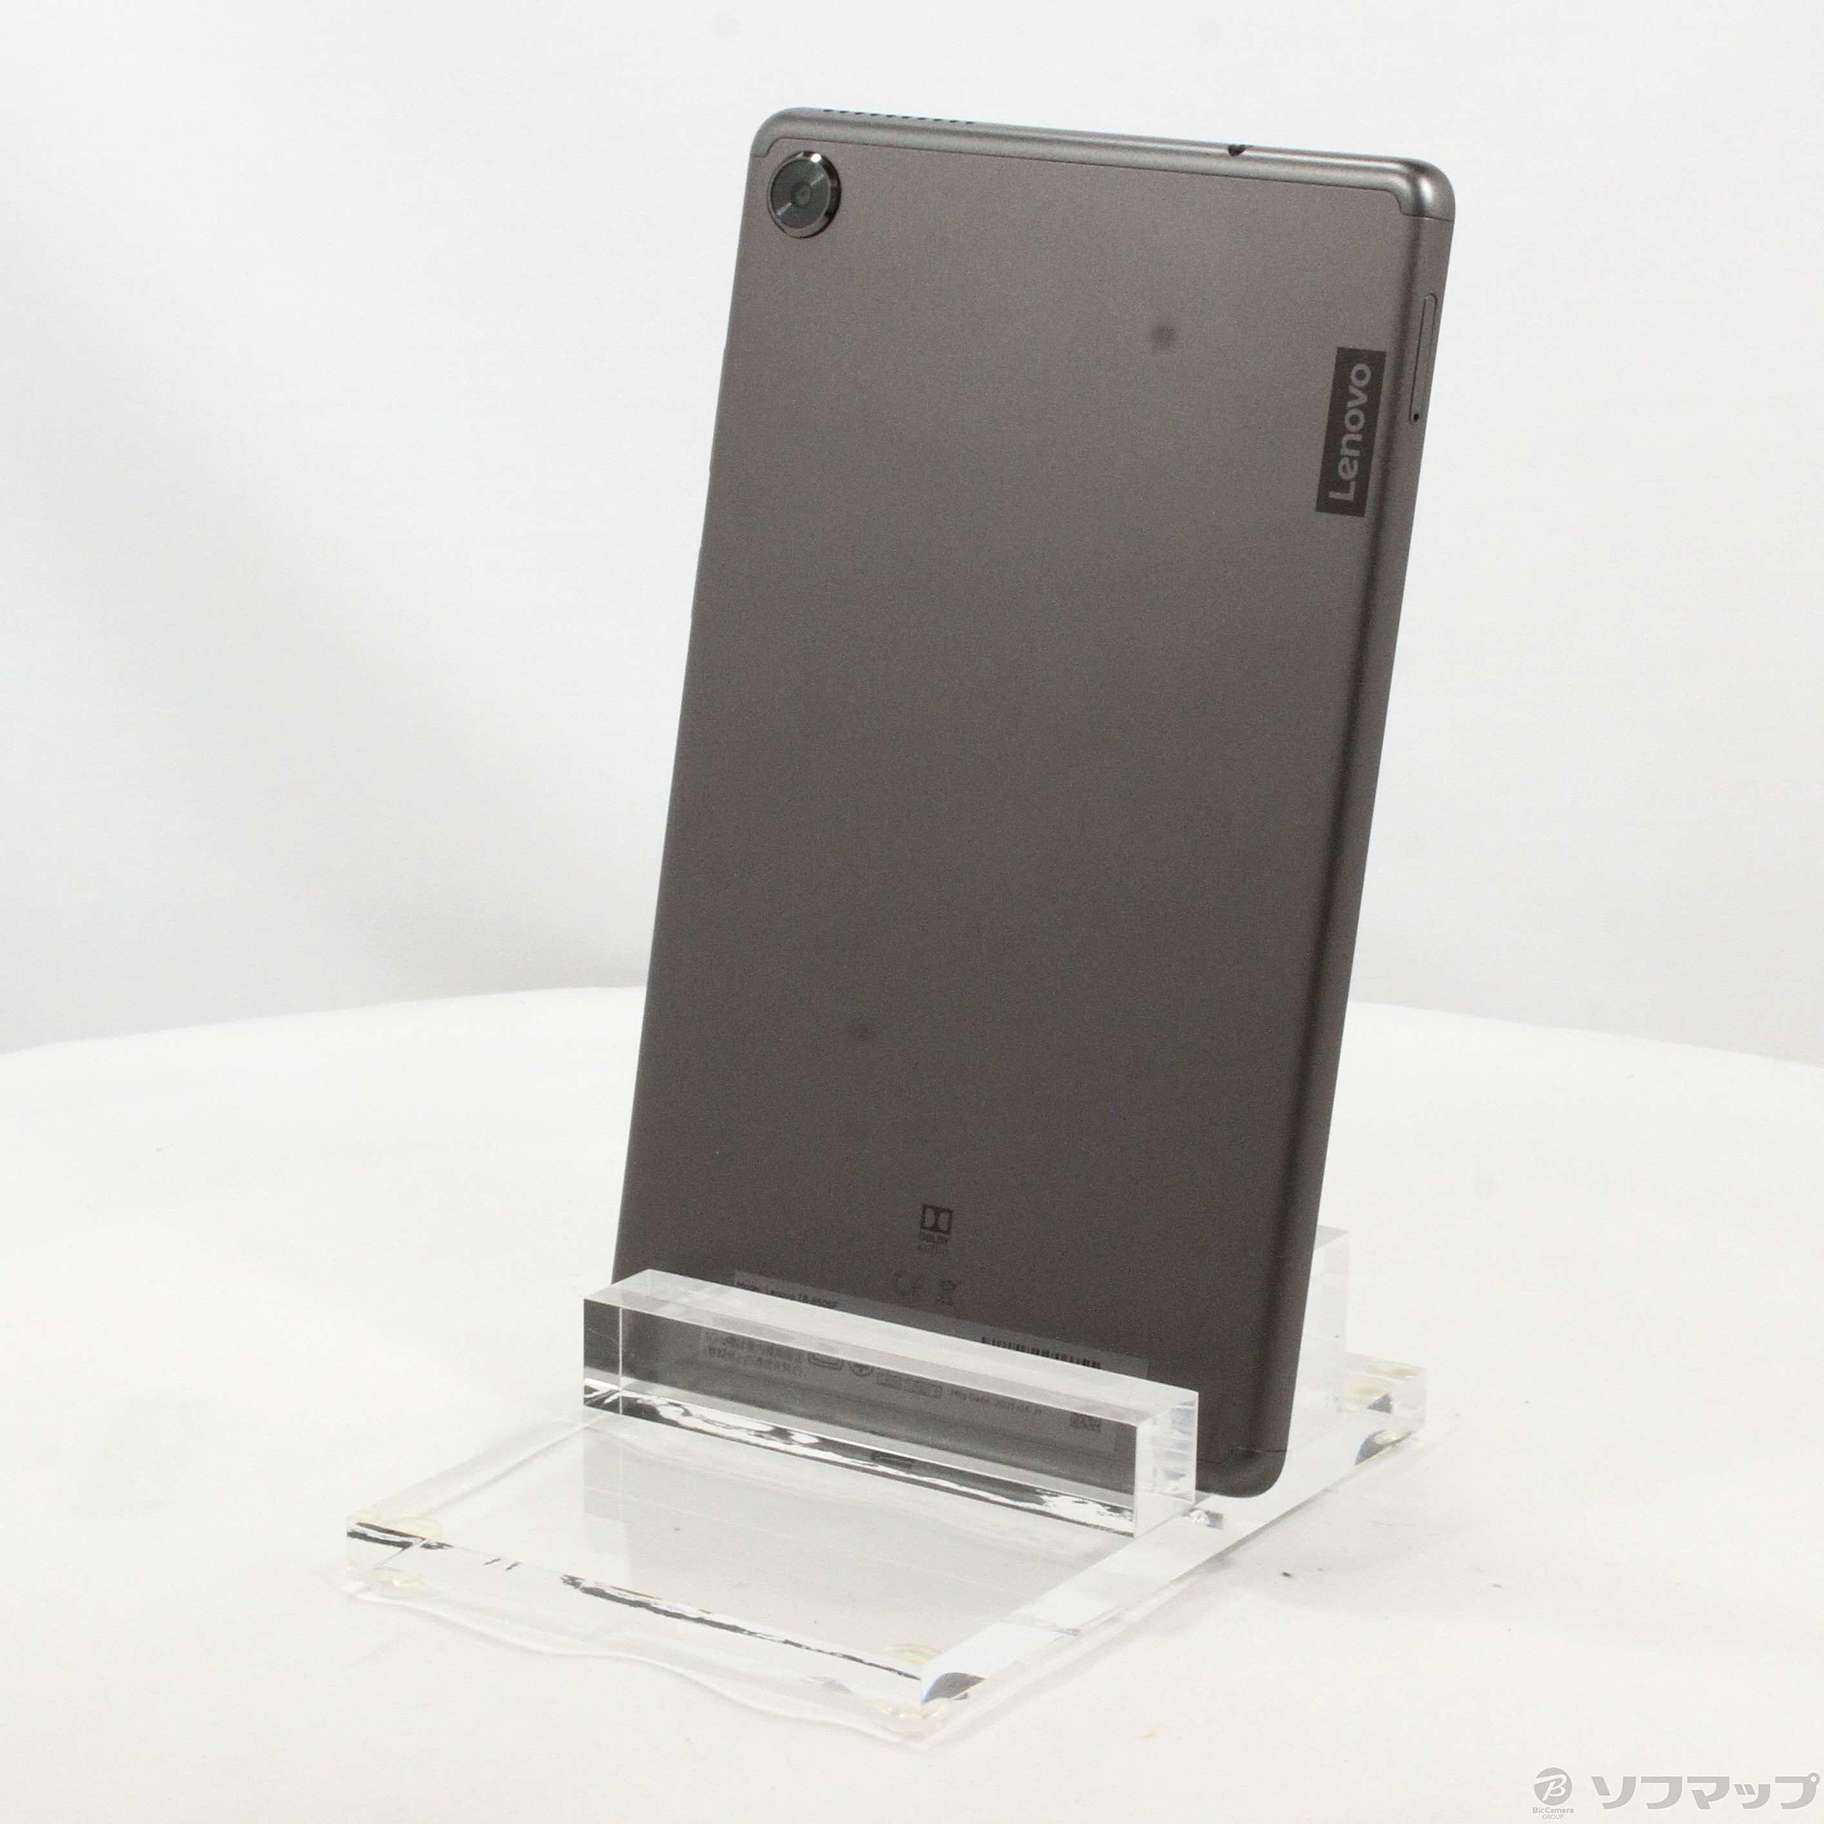 中古】Lenovo Tab M8 16GB アイアングレー ZA5G0084JP Wi-Fi ...